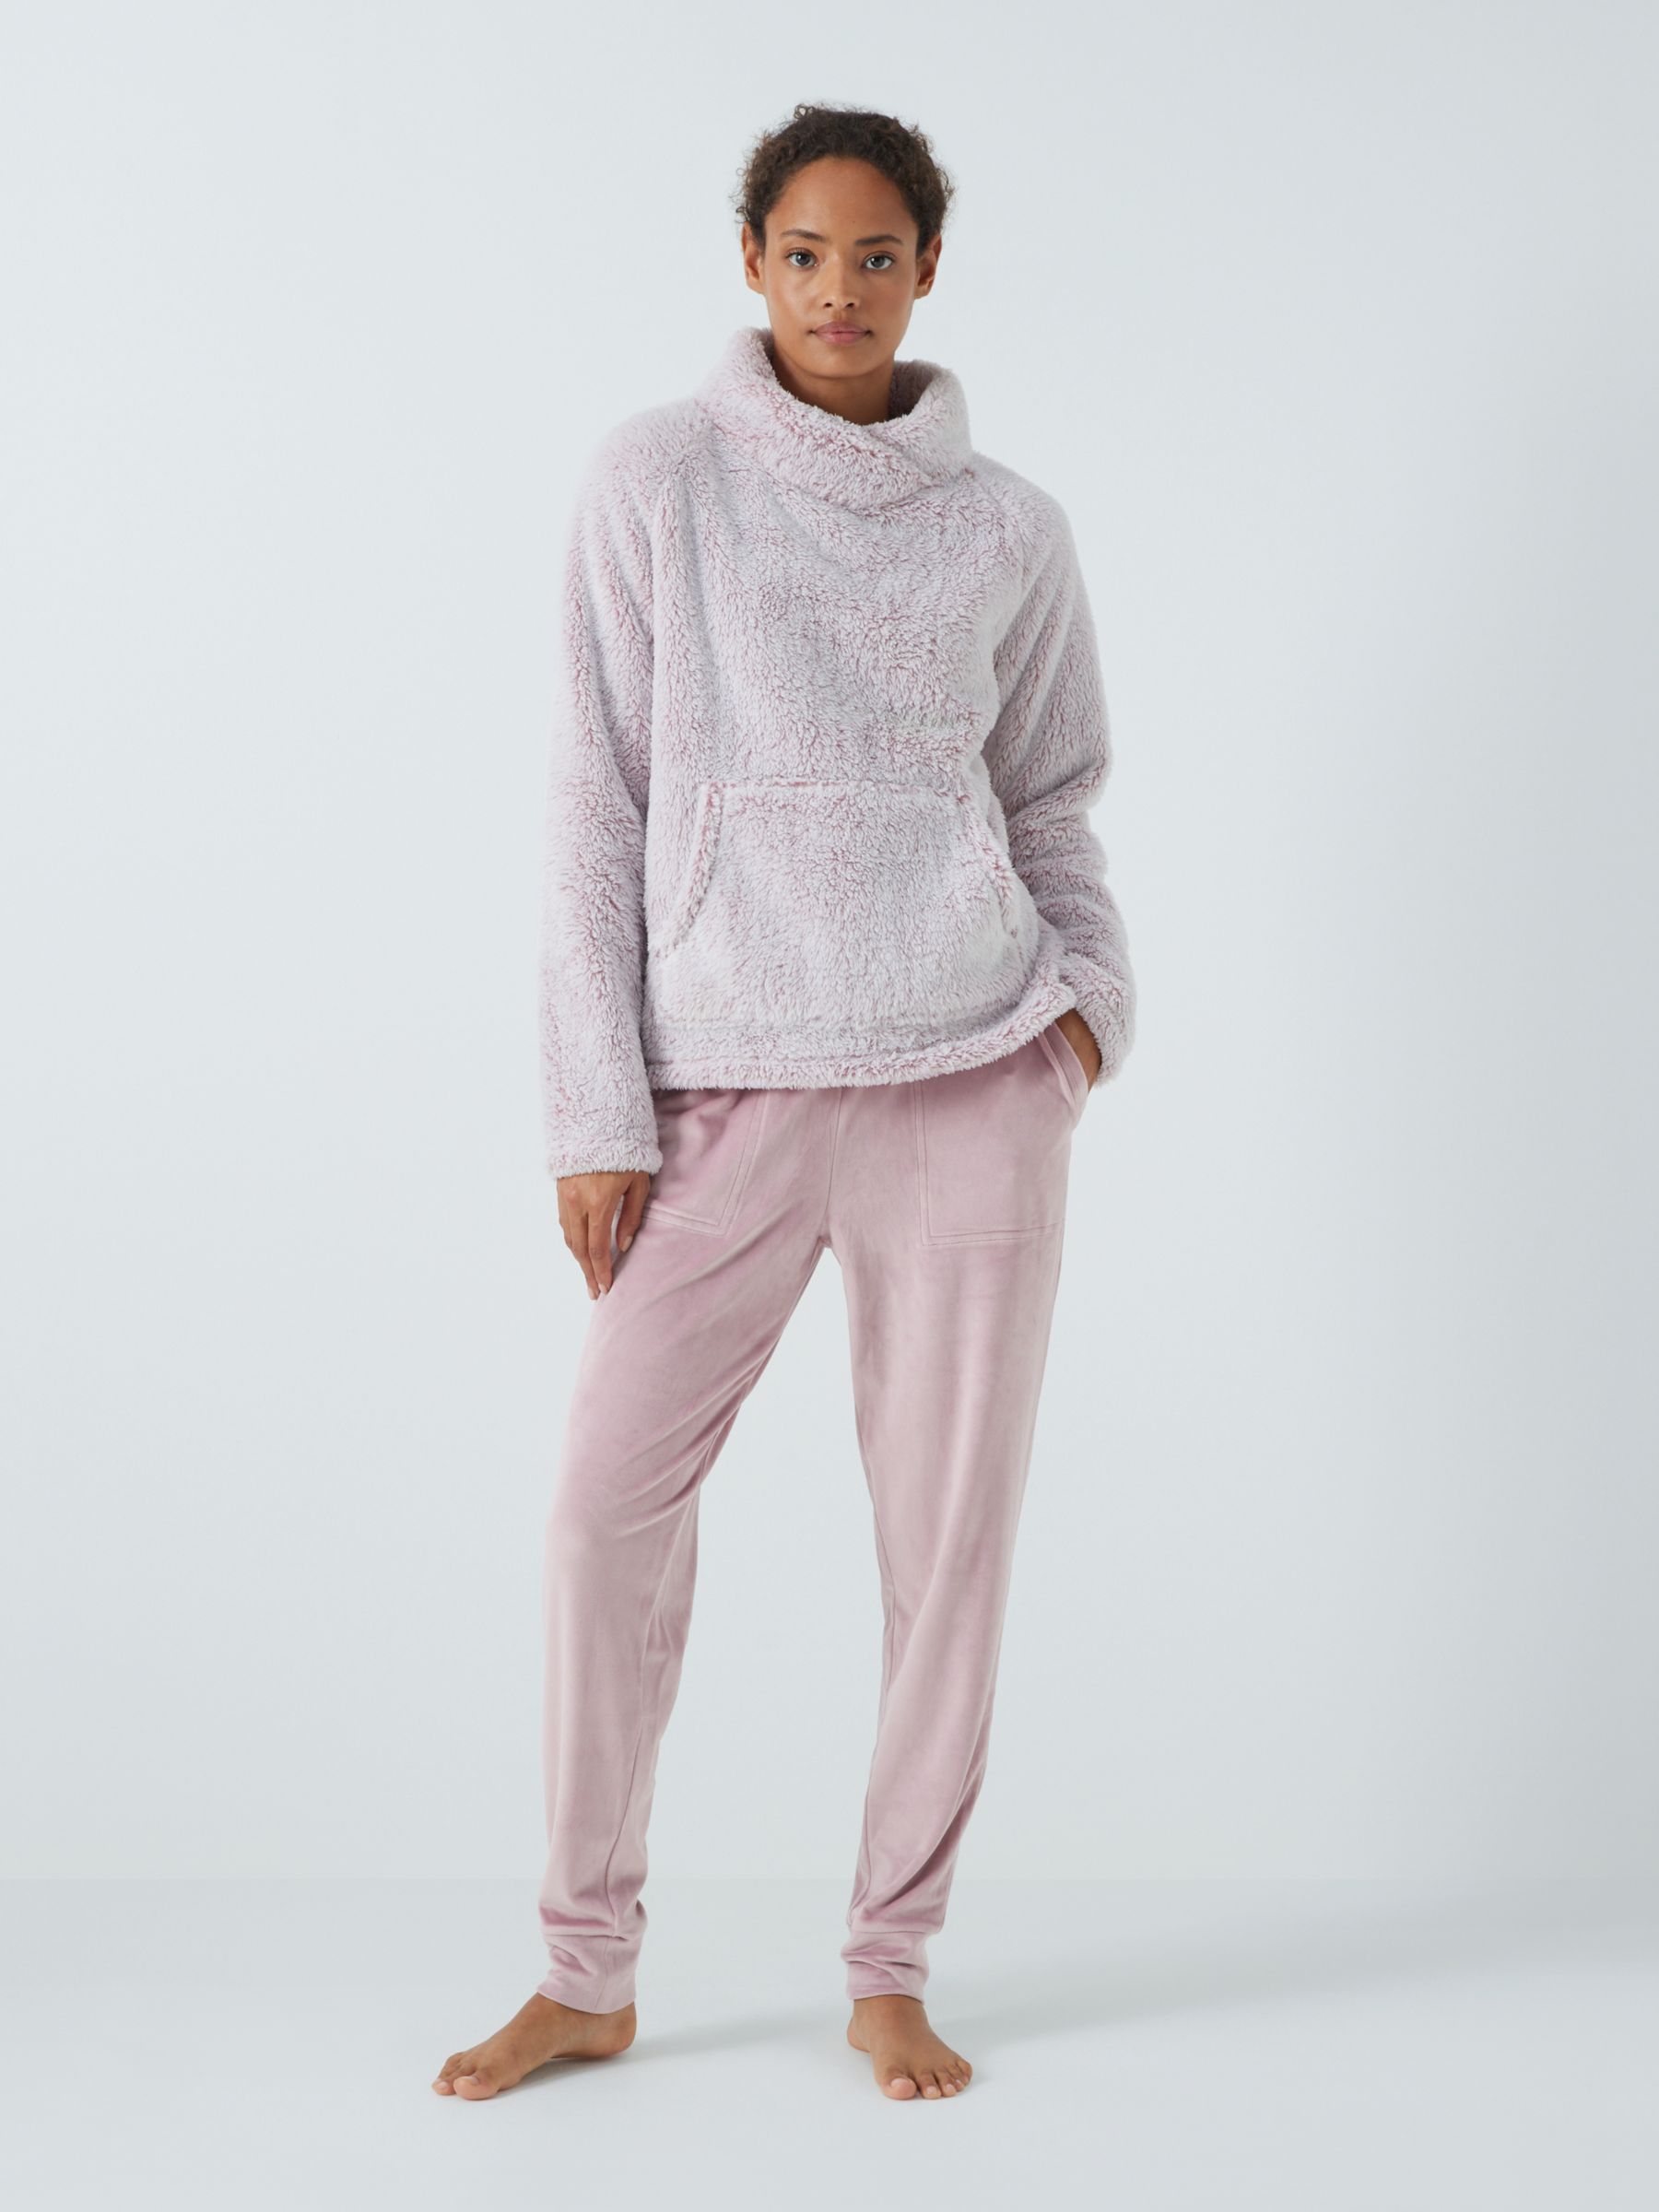 Daily Snuggle Blush Pink Eyelash Knit Sweater